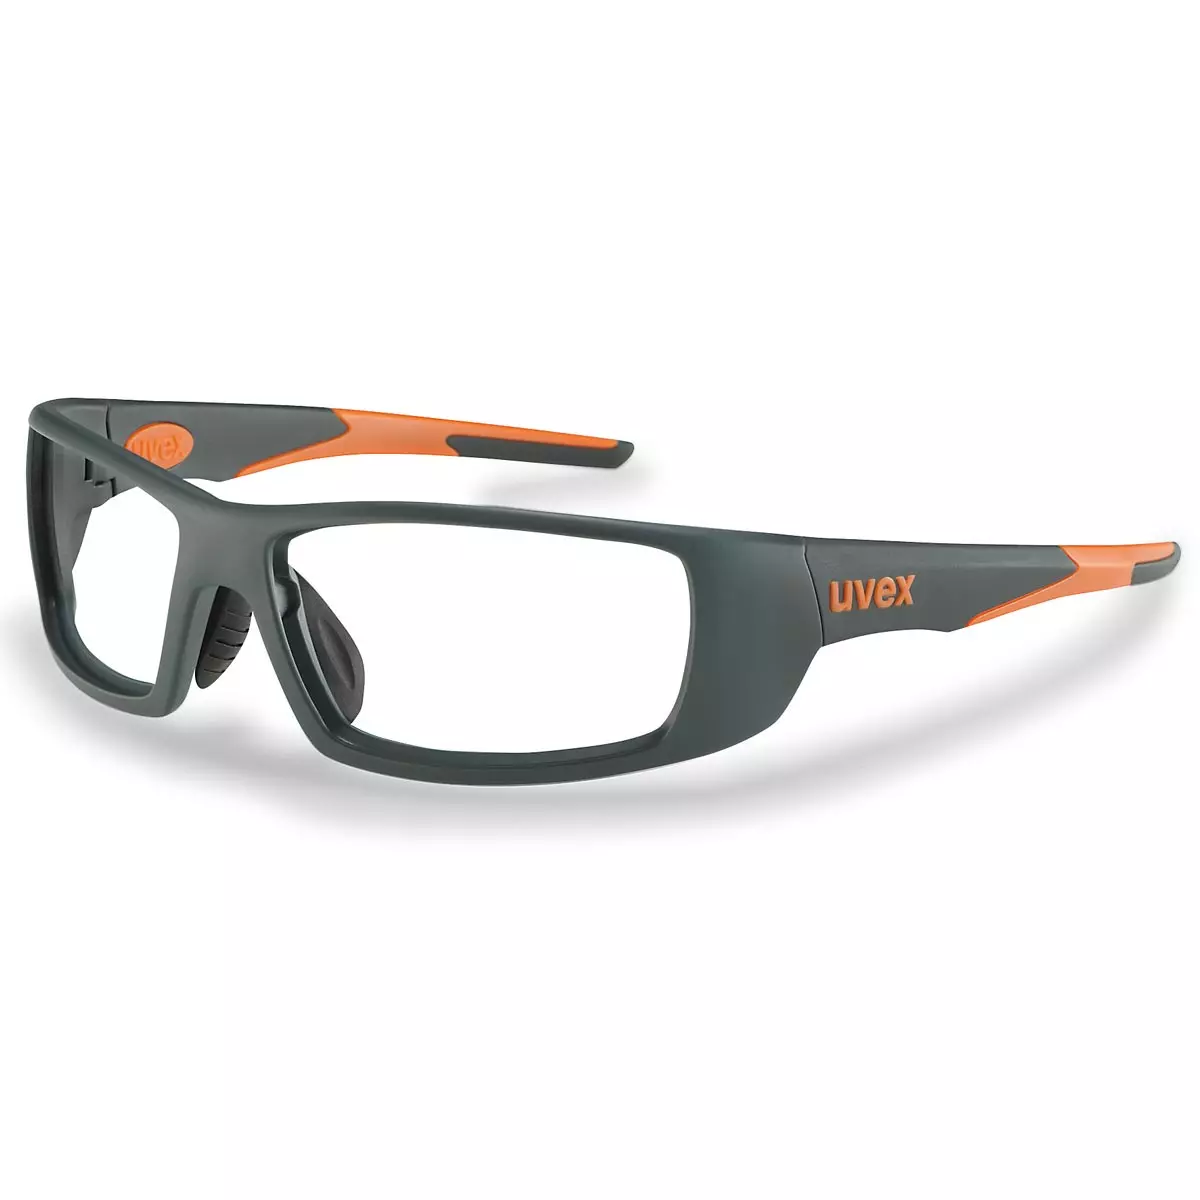 Uvex Korrektionsschutzbrille RX sp 5512 orange - 1